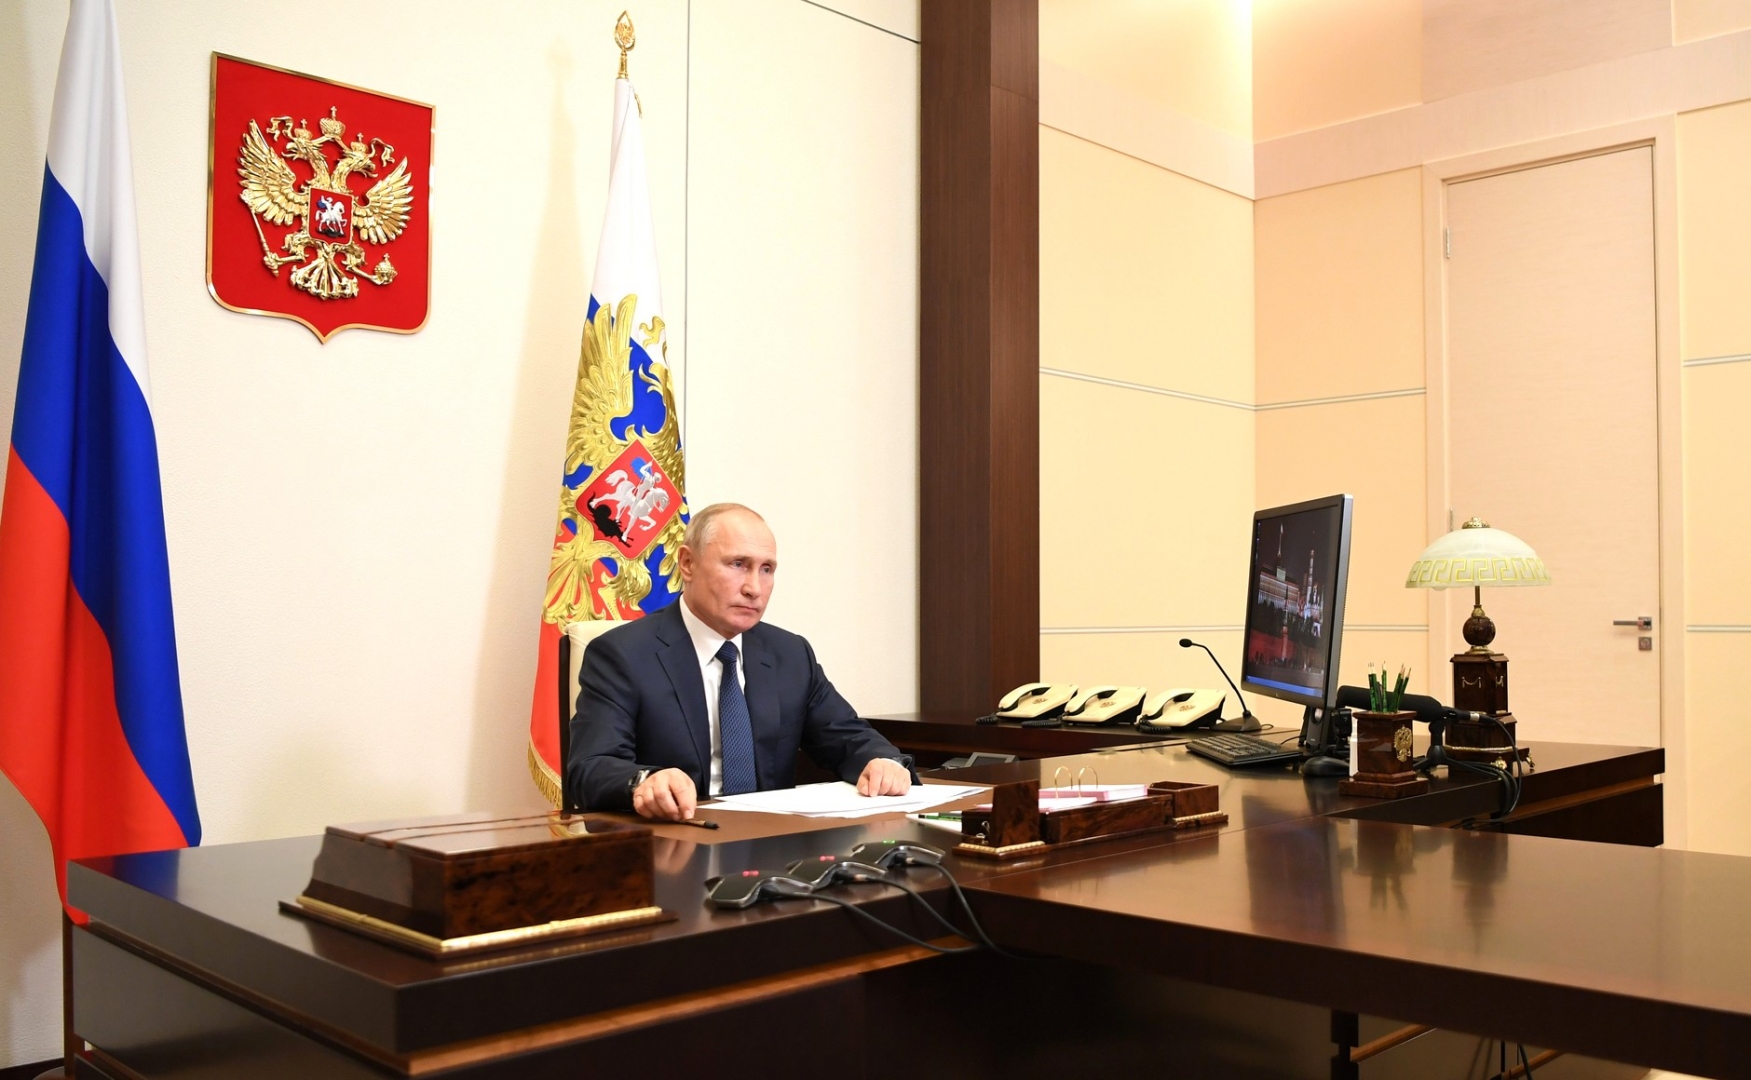 Заявление Владимира Путина о подписании договора о прекращении огня между Азербайджаном и Арменией